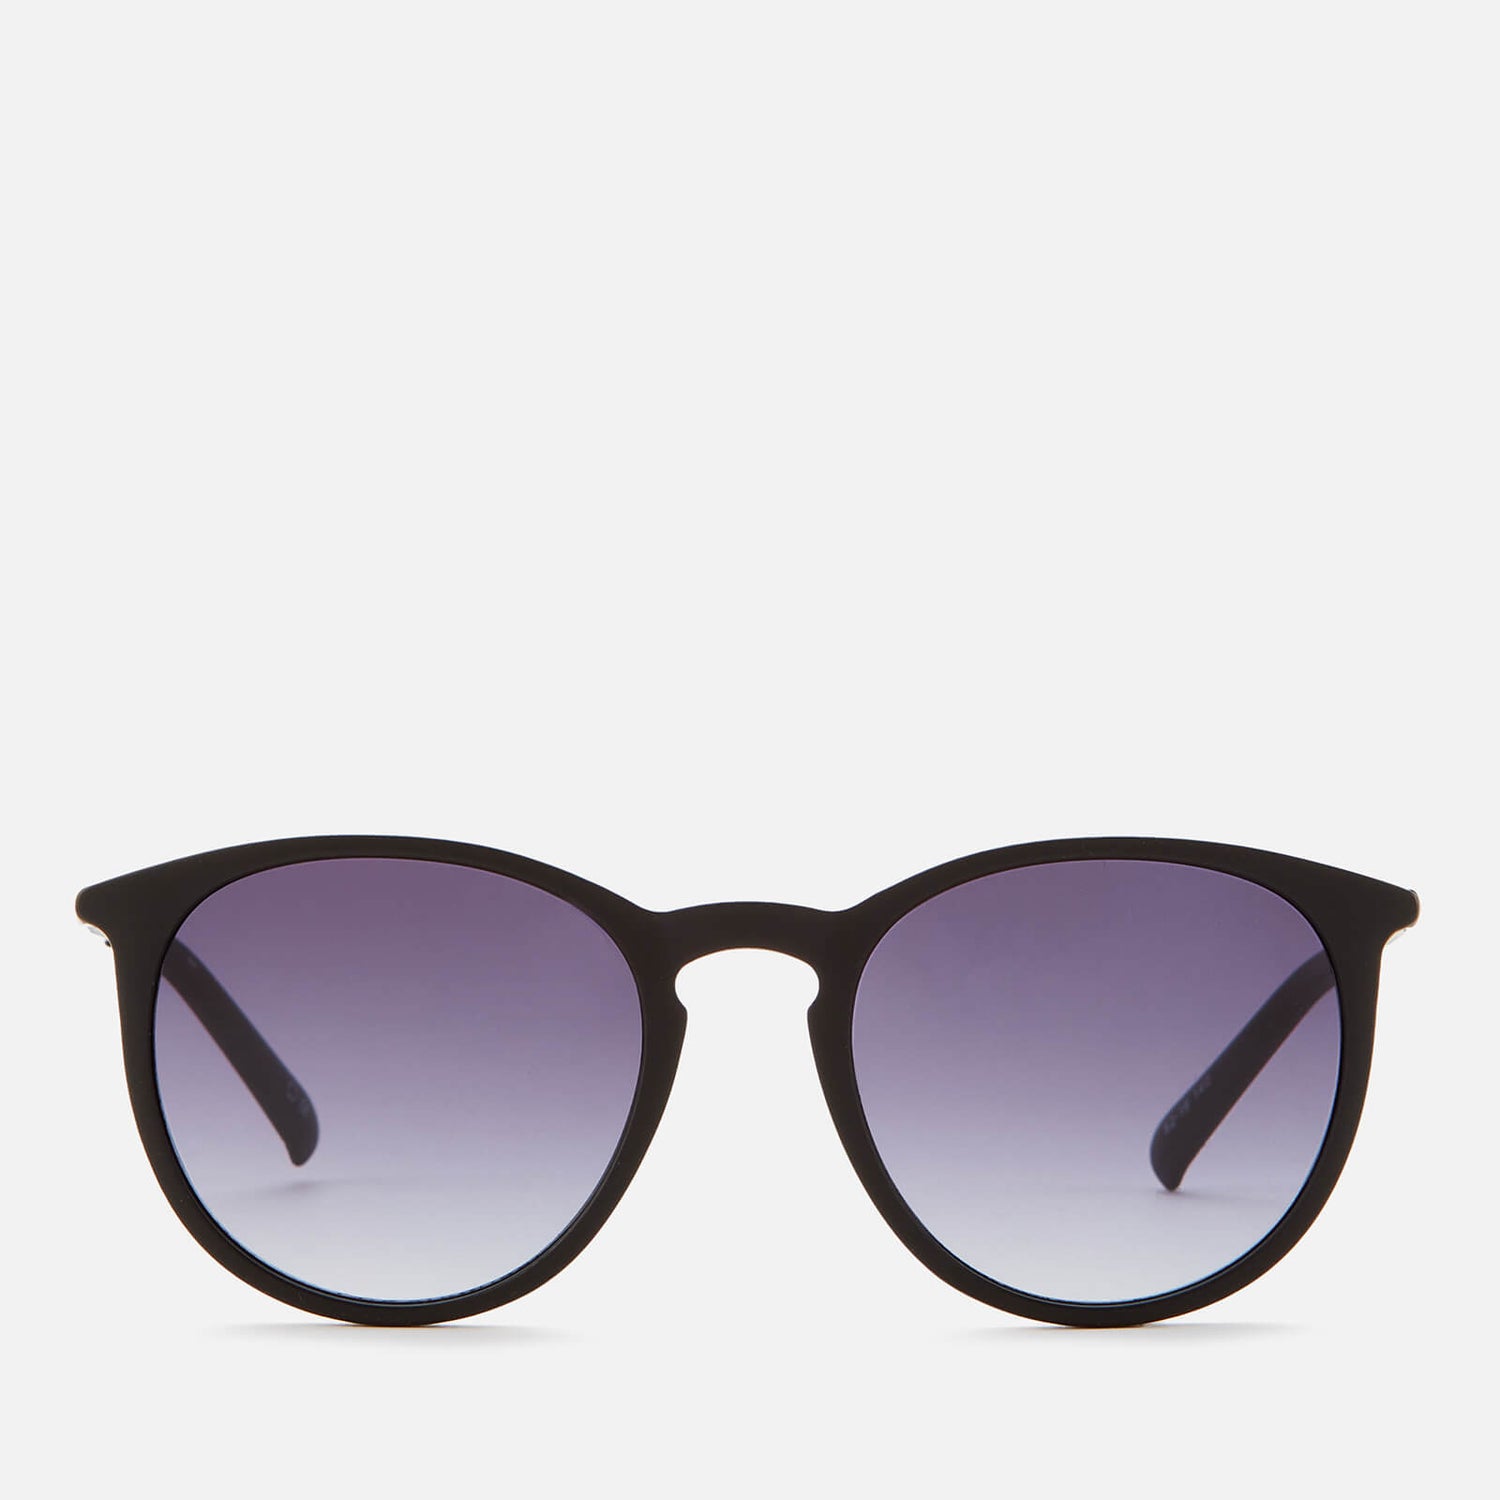 Le Specs Women's Oh Buoy Round Sunglasses - Matte Black